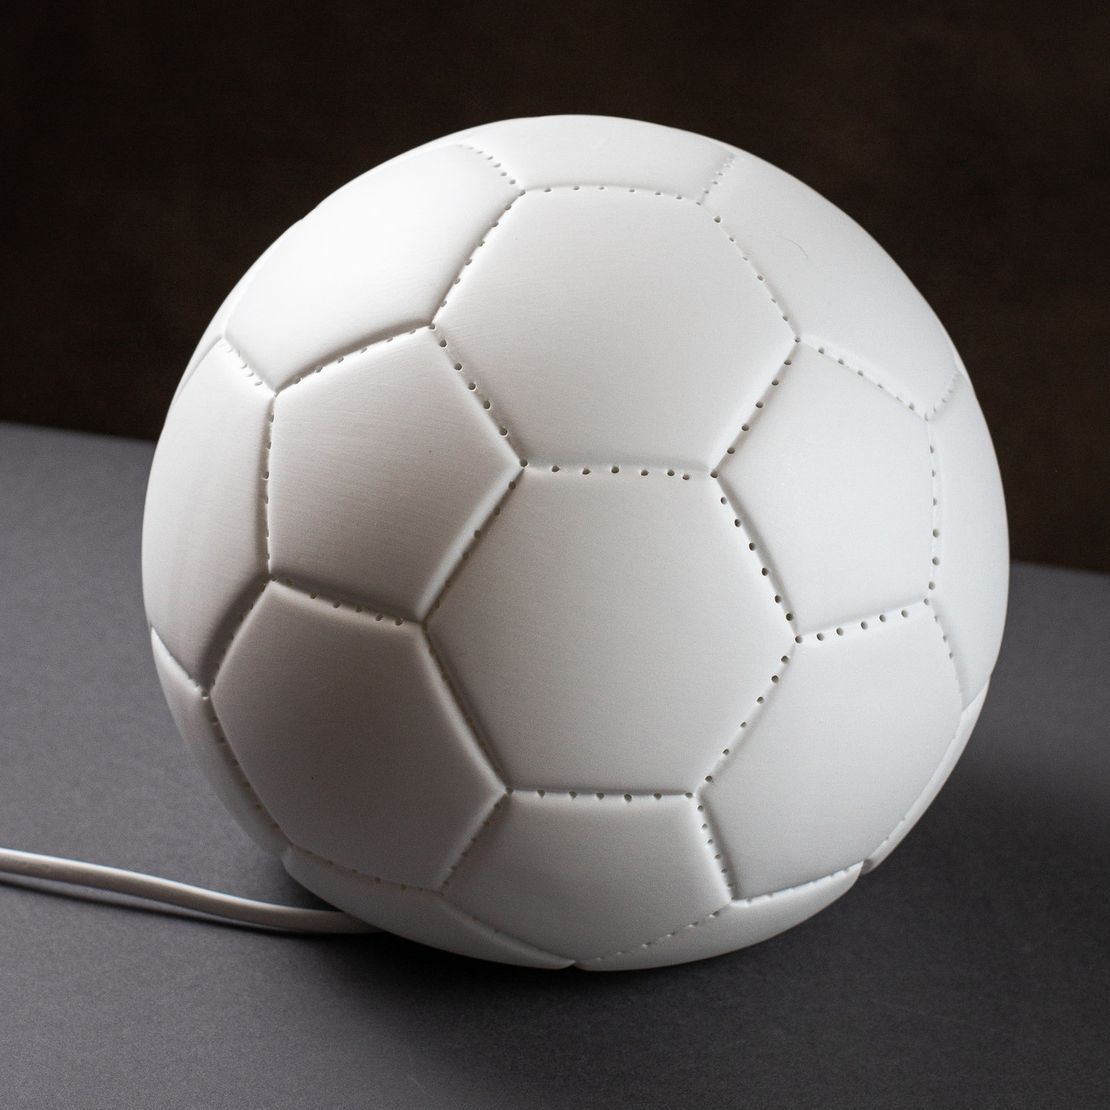 Настільна порцелянова лампа-нічник "Футбольний м'яч", ручна робота, з регулюванням кольору освітлення 16 кольорів!